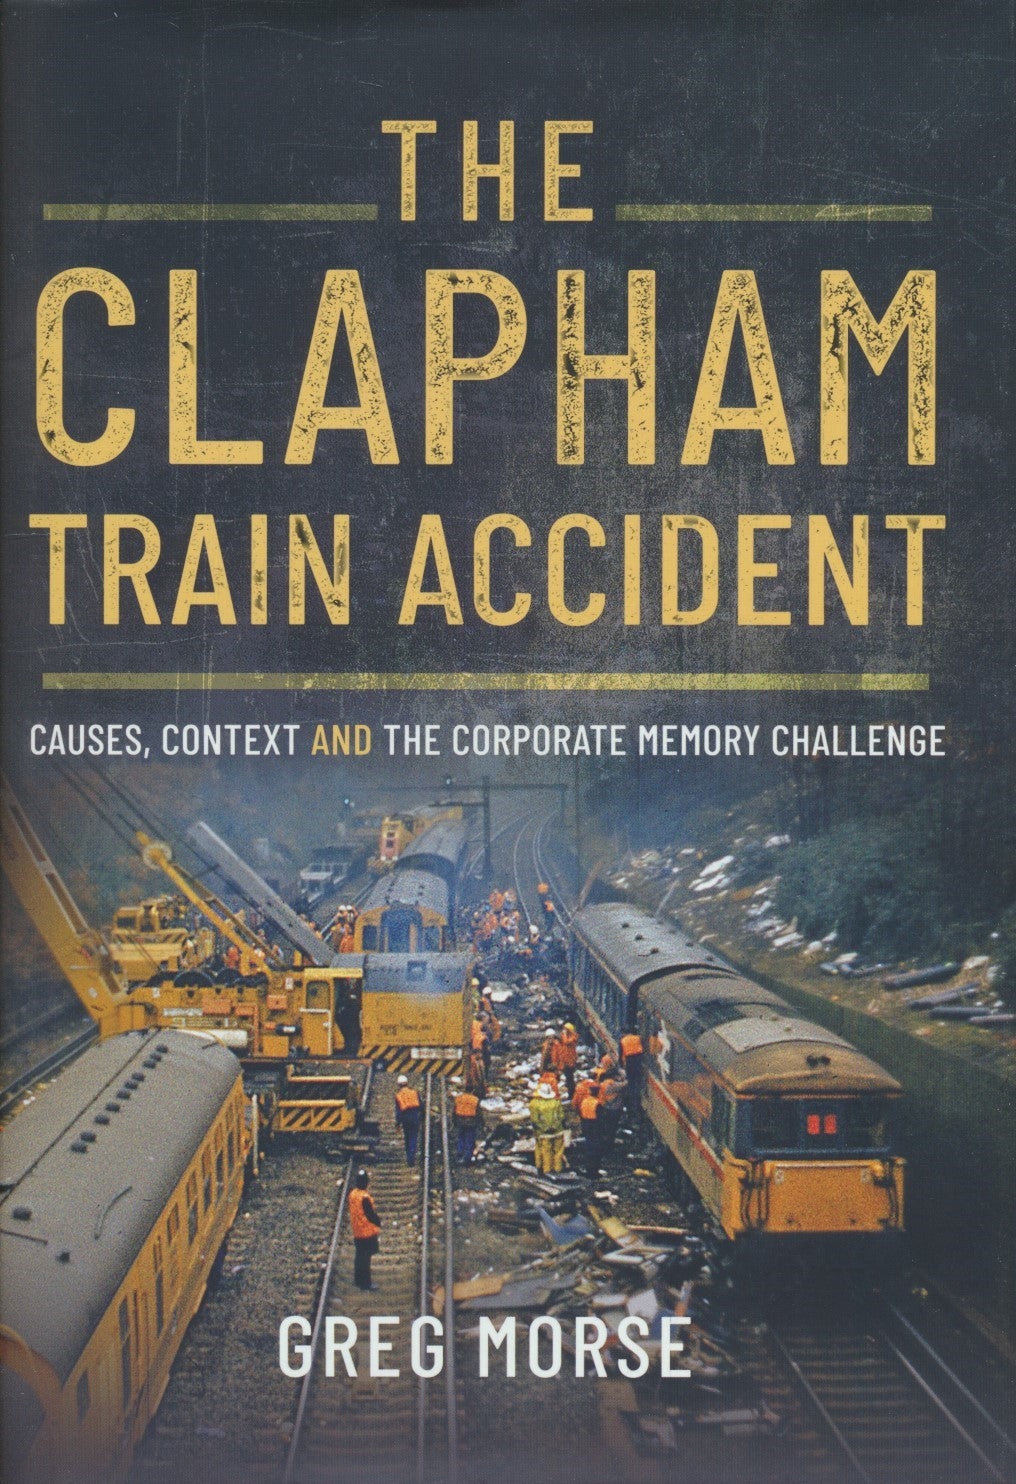 The Clapham Train Accident